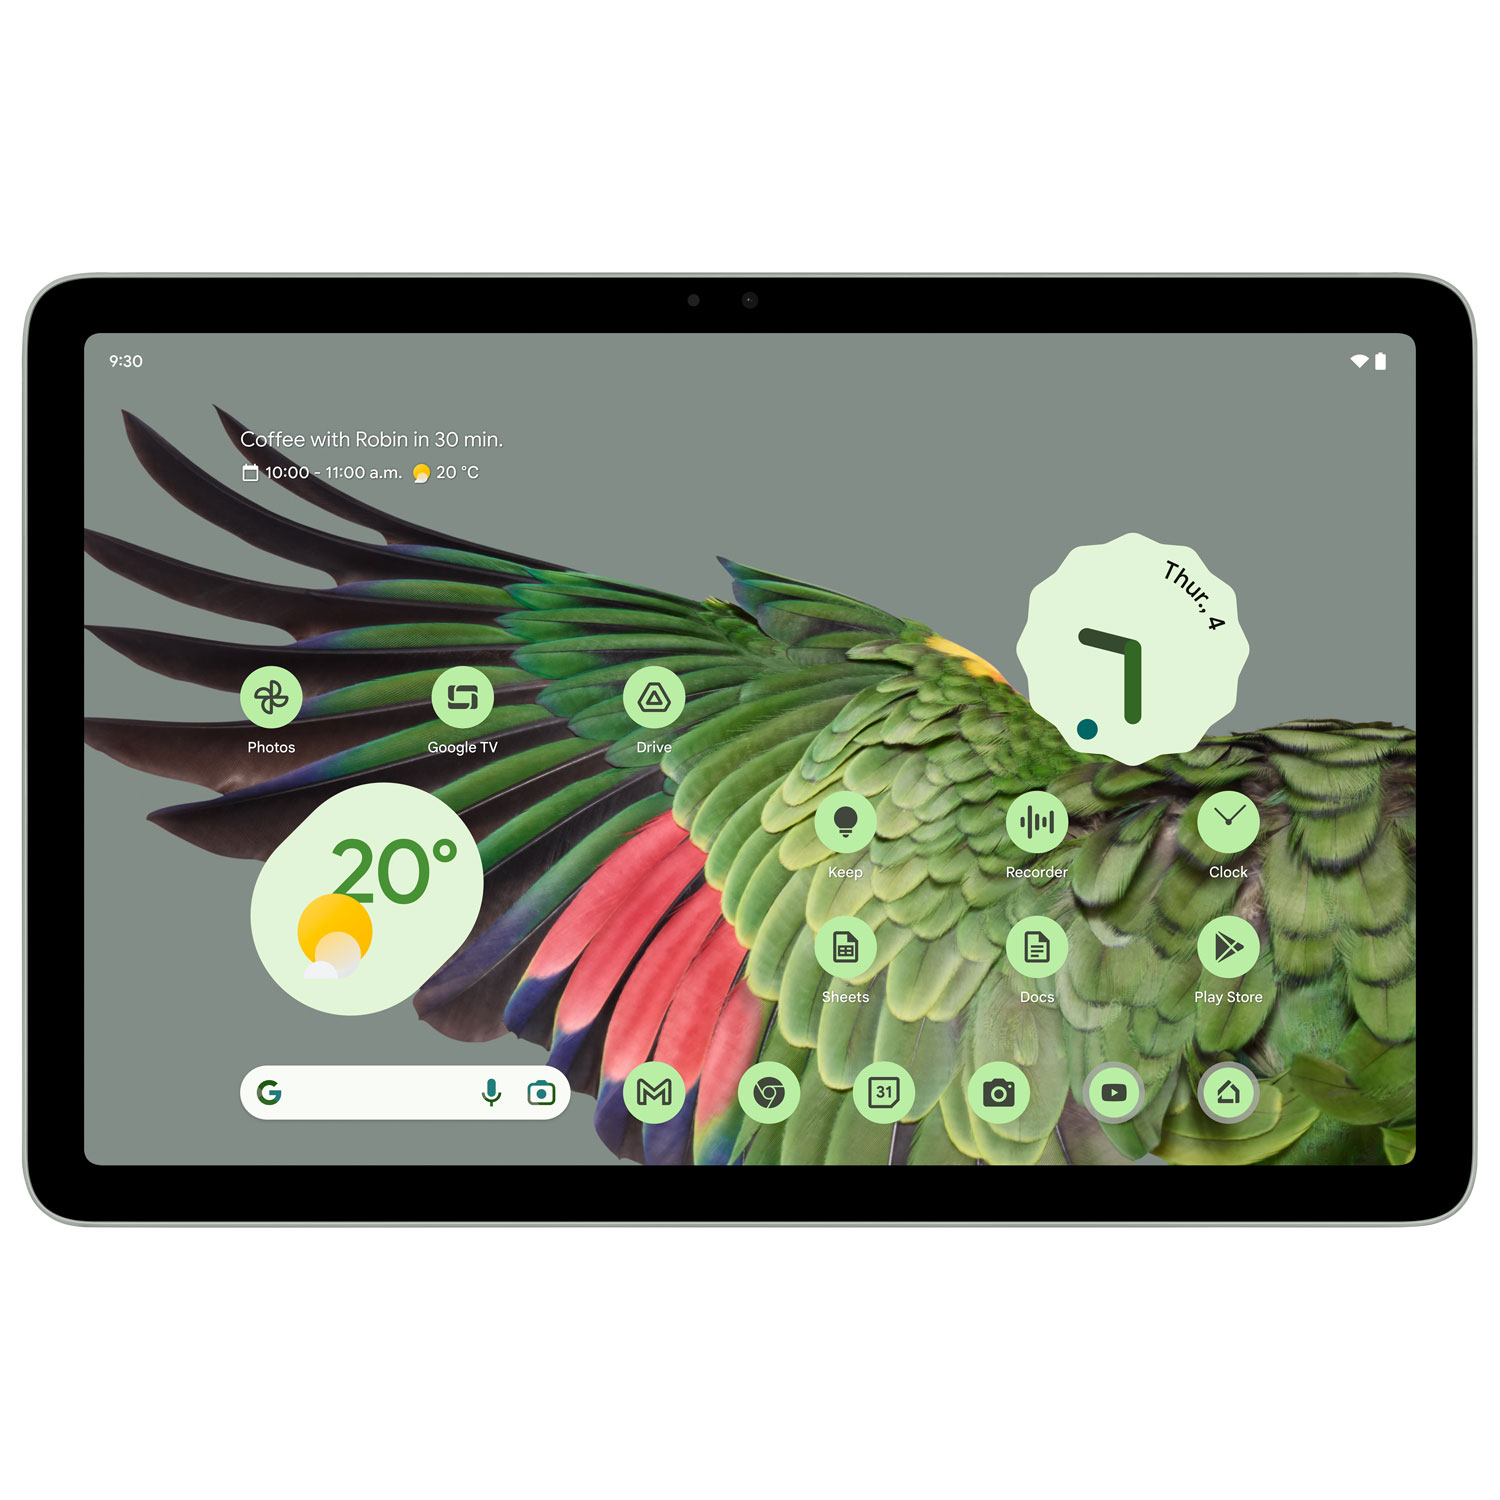 Google Pixel 11" 128GB Tablet with Charging Speaker Dock - Hazel